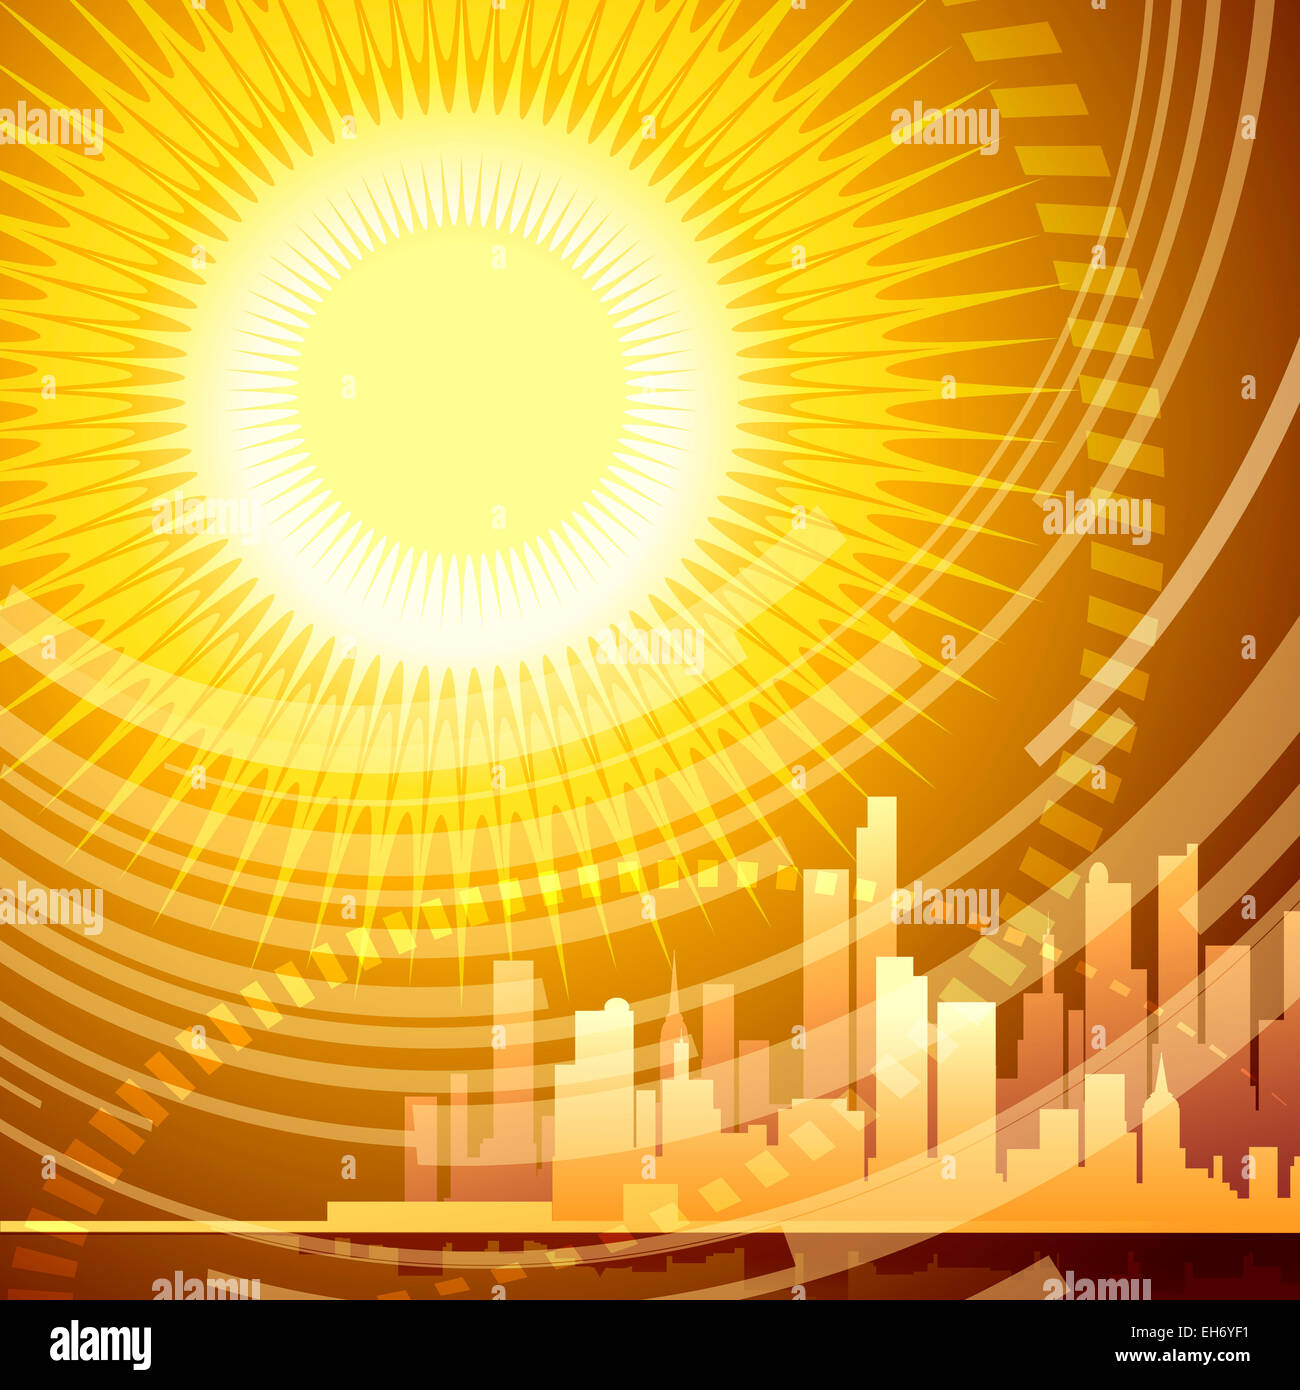 Abstrakte Darstellung der modernen Stadt gegen riesige Sonnenstrahlen mit mit Steigungen im Plakat Stil gezeichnet Stockfoto